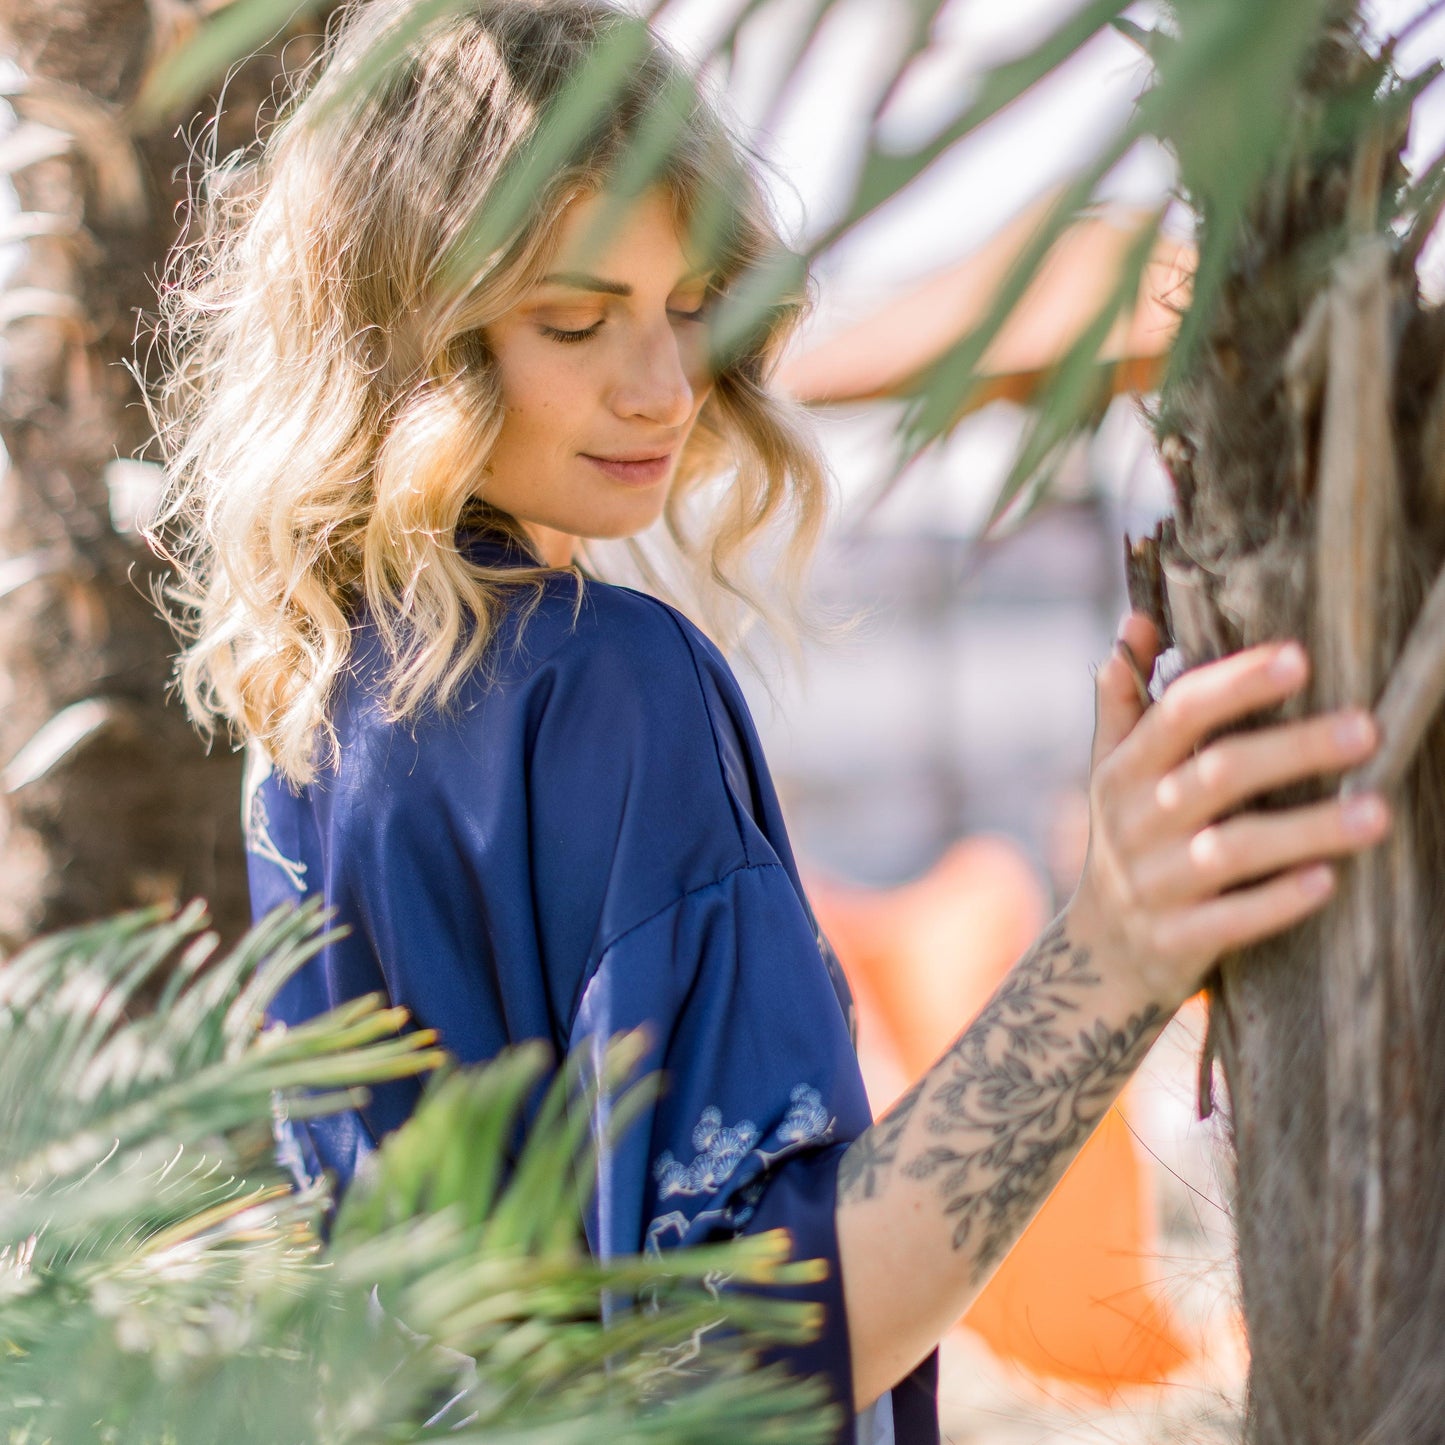 Influencerin Anna steht verträumt unter Palmen in einem saphierblauen Kimono